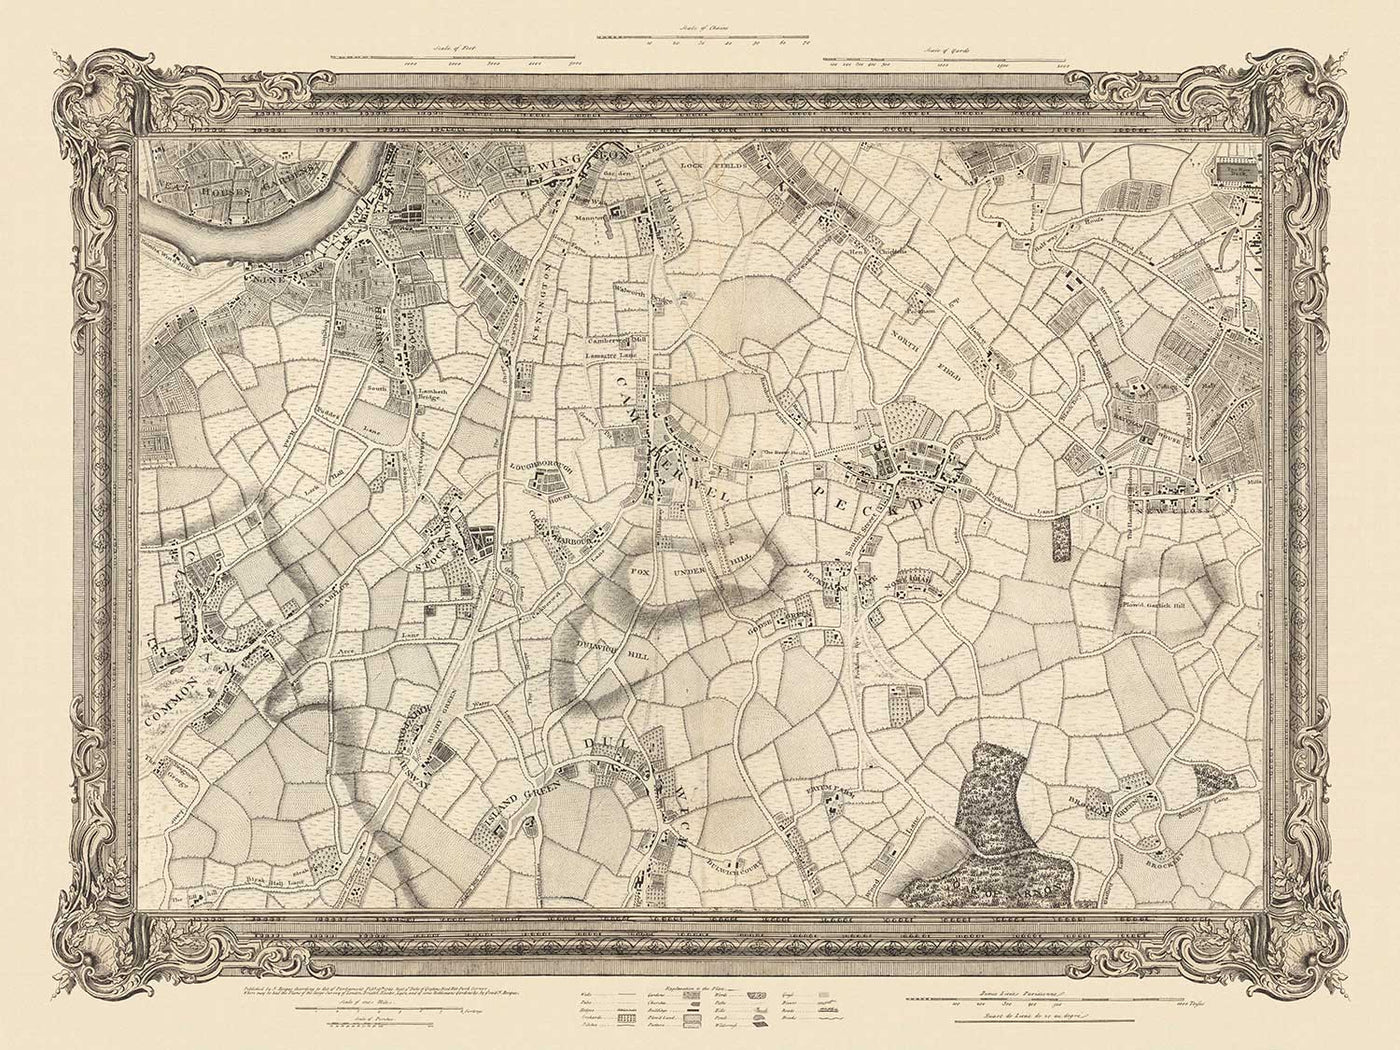 Antiguo mapa del sur de Londres en 1746 por John Rocque - Peckham, Camberwell, Vauxhall, Dulwich, Lambeth, SW2, SW4, SW8, SW9, SE5, SE15, SE22, SE24